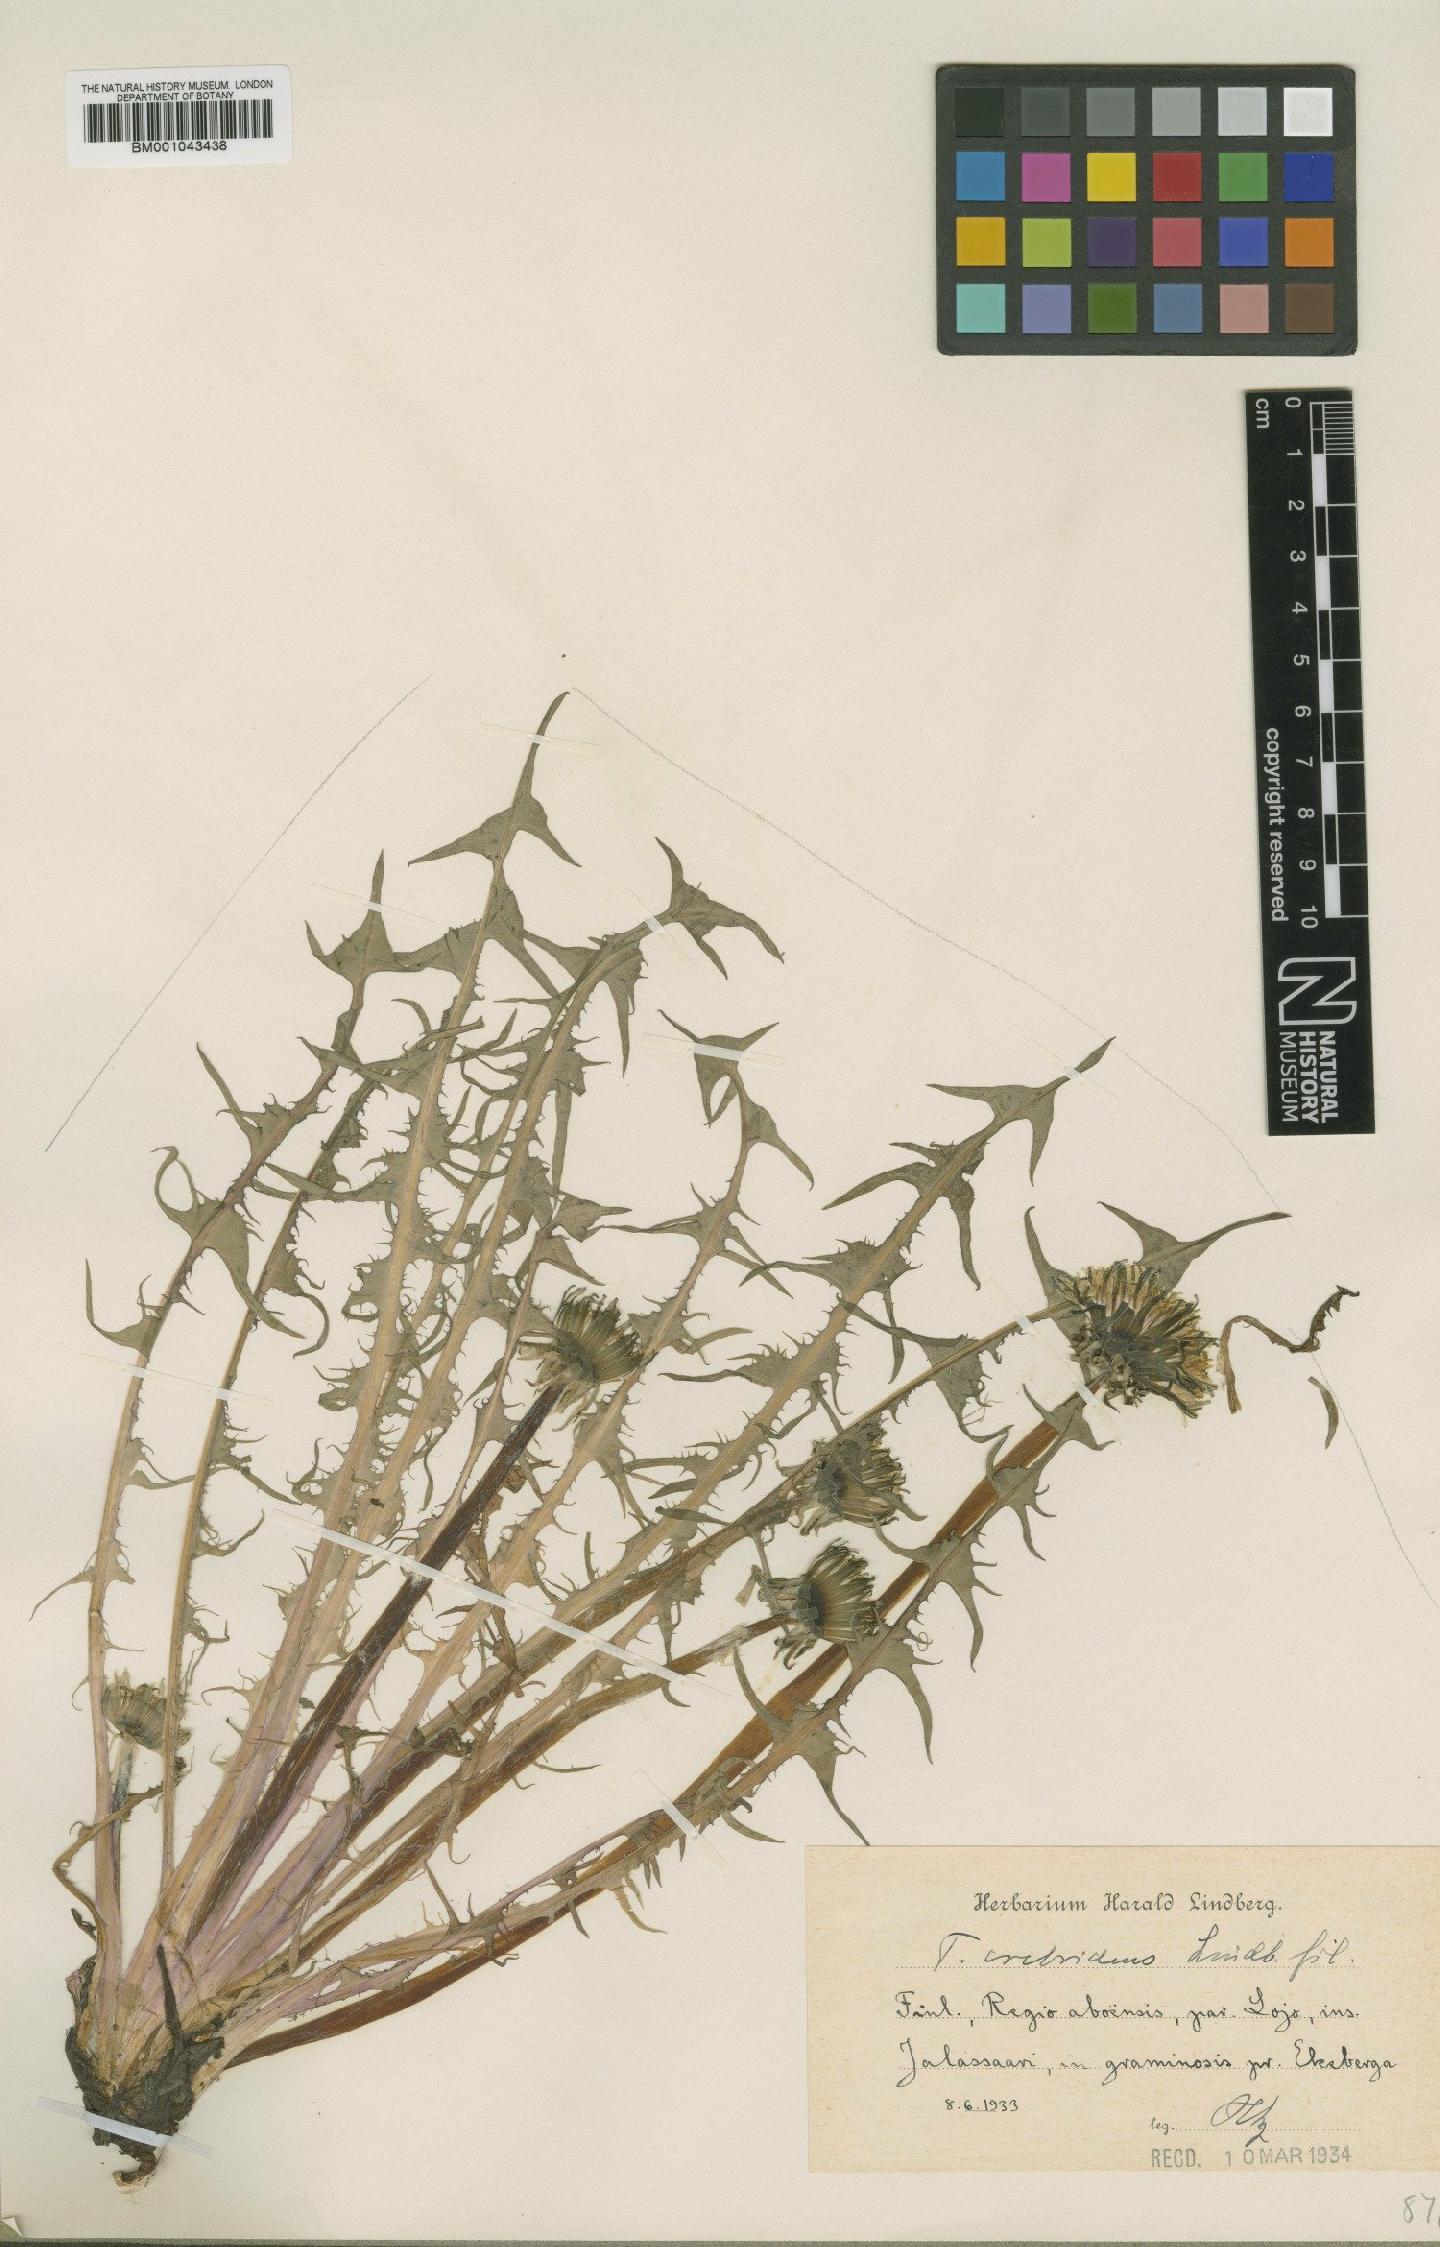 To NHMUK collection (Taraxacum crebridens Lindb.; Type; NHMUK:ecatalogue:1998140)